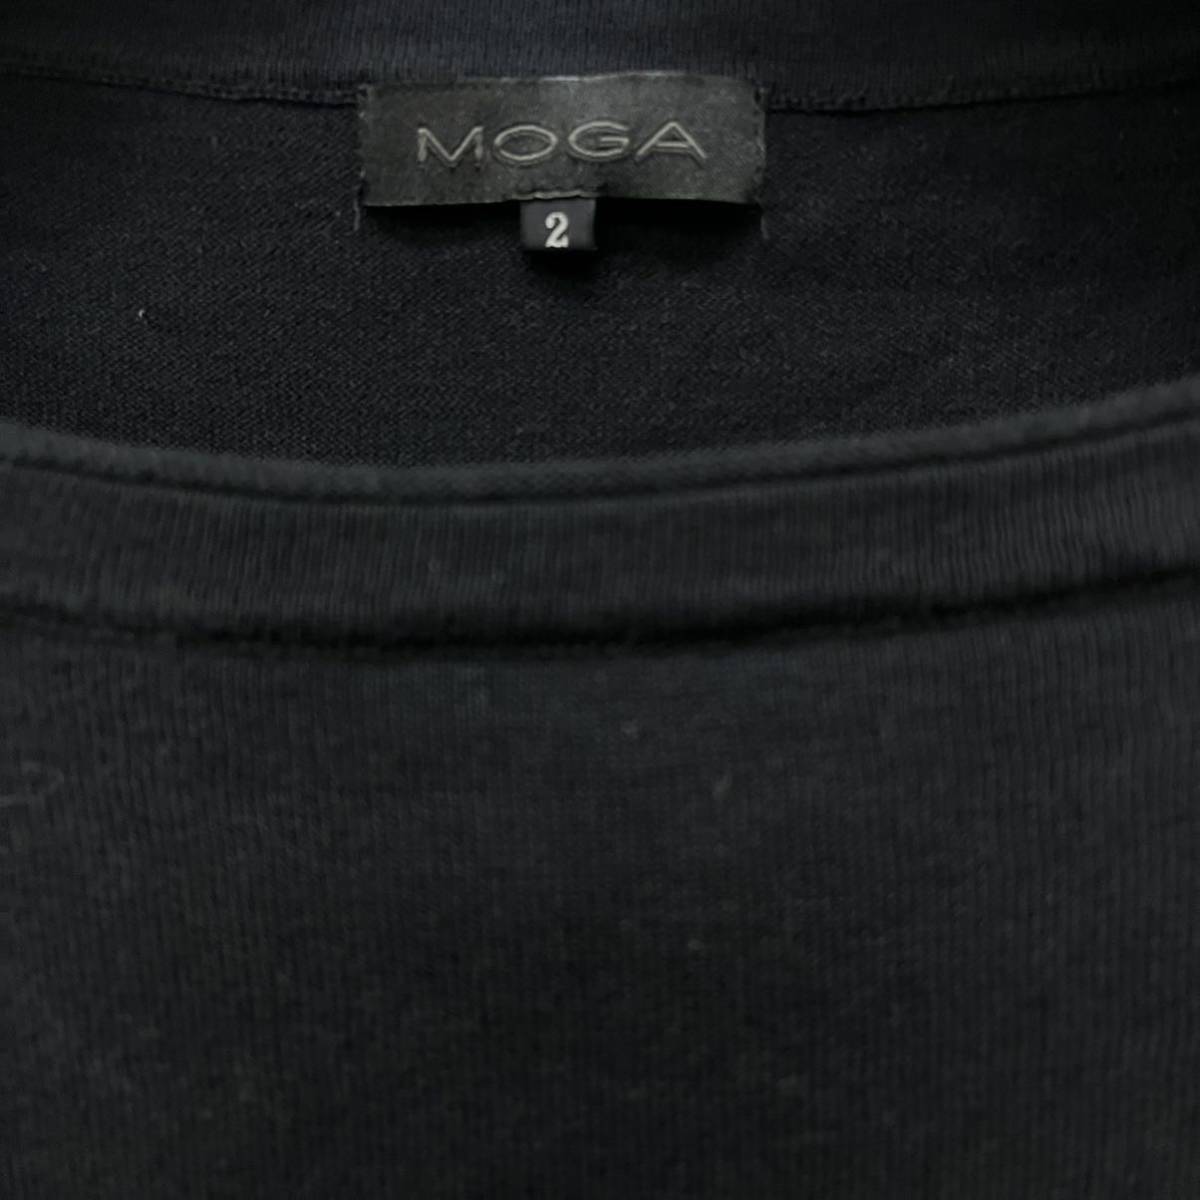 MOGA / モガ レディース 長袖Tシャツ カットソー ブラック 2サイズ 薄手 O-2027の画像3